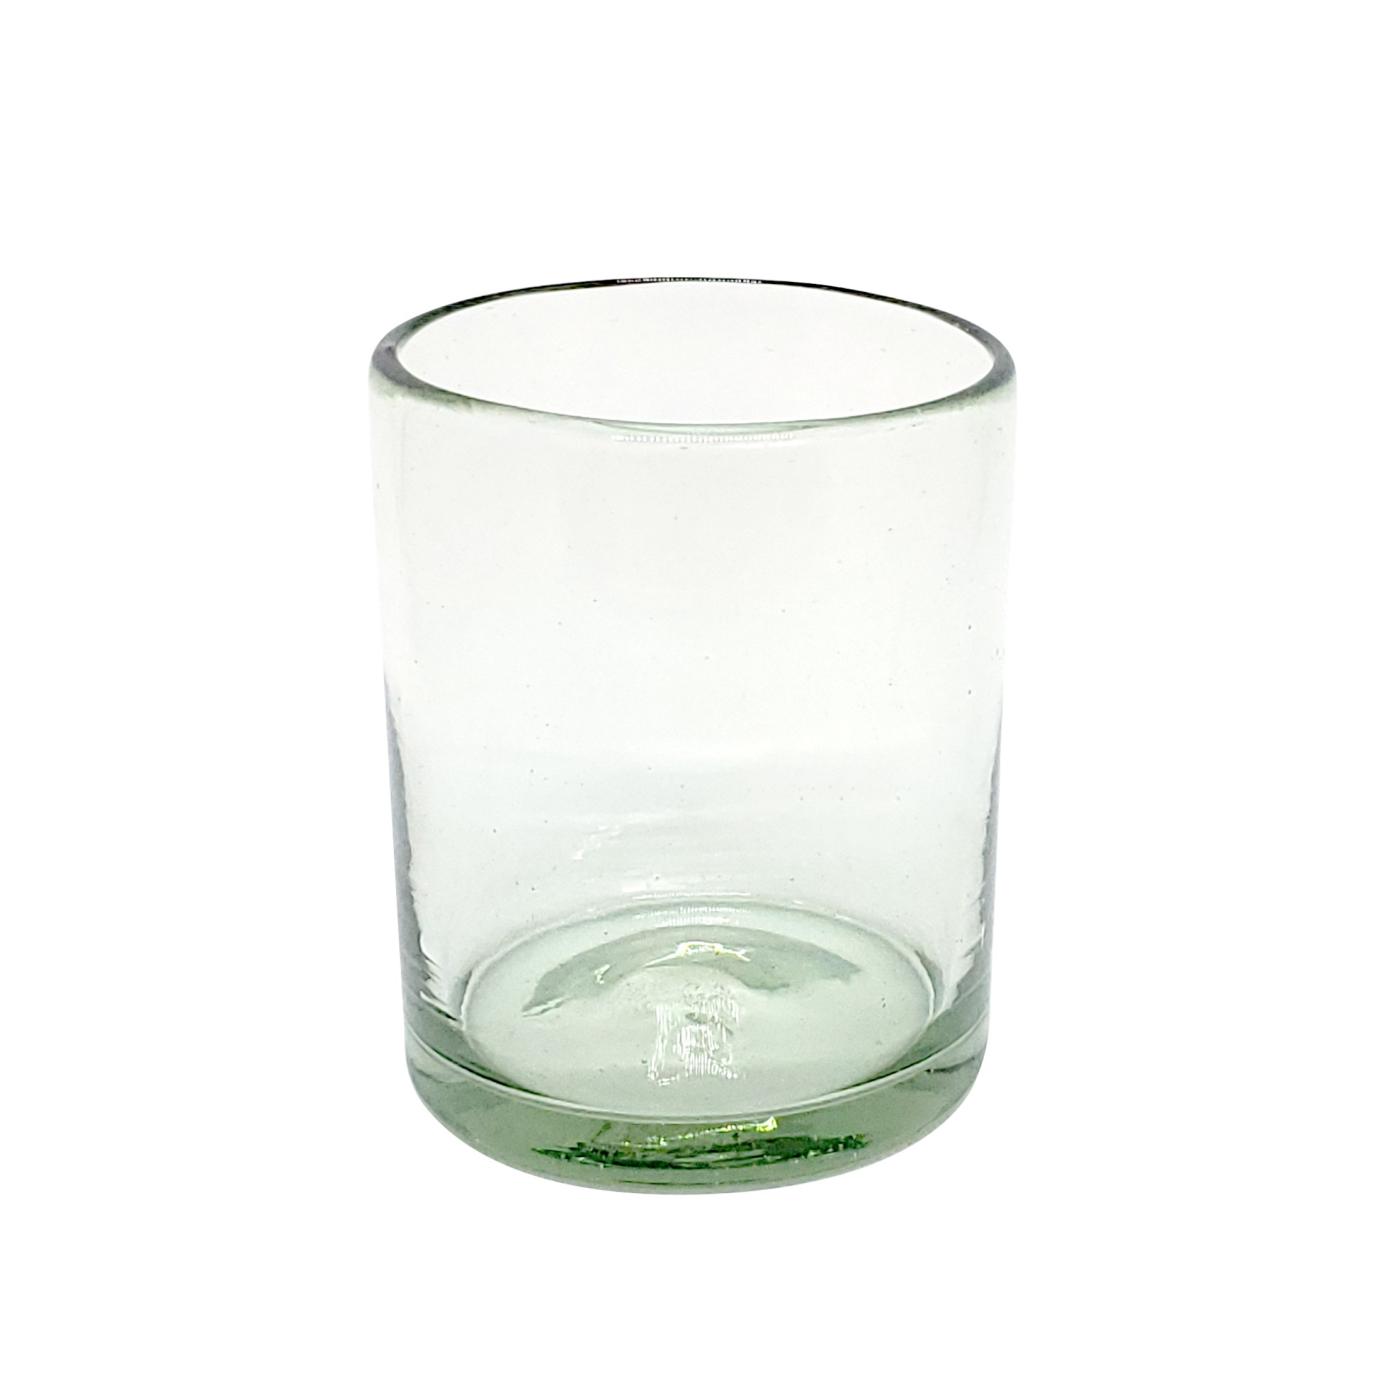 VIDRIO SOPLADO al Mayoreo / vasos chicos transparentes / Para una apariencia más tradicional, éstos vasos de vidrio soplado son creados de manera 100% artesanal.